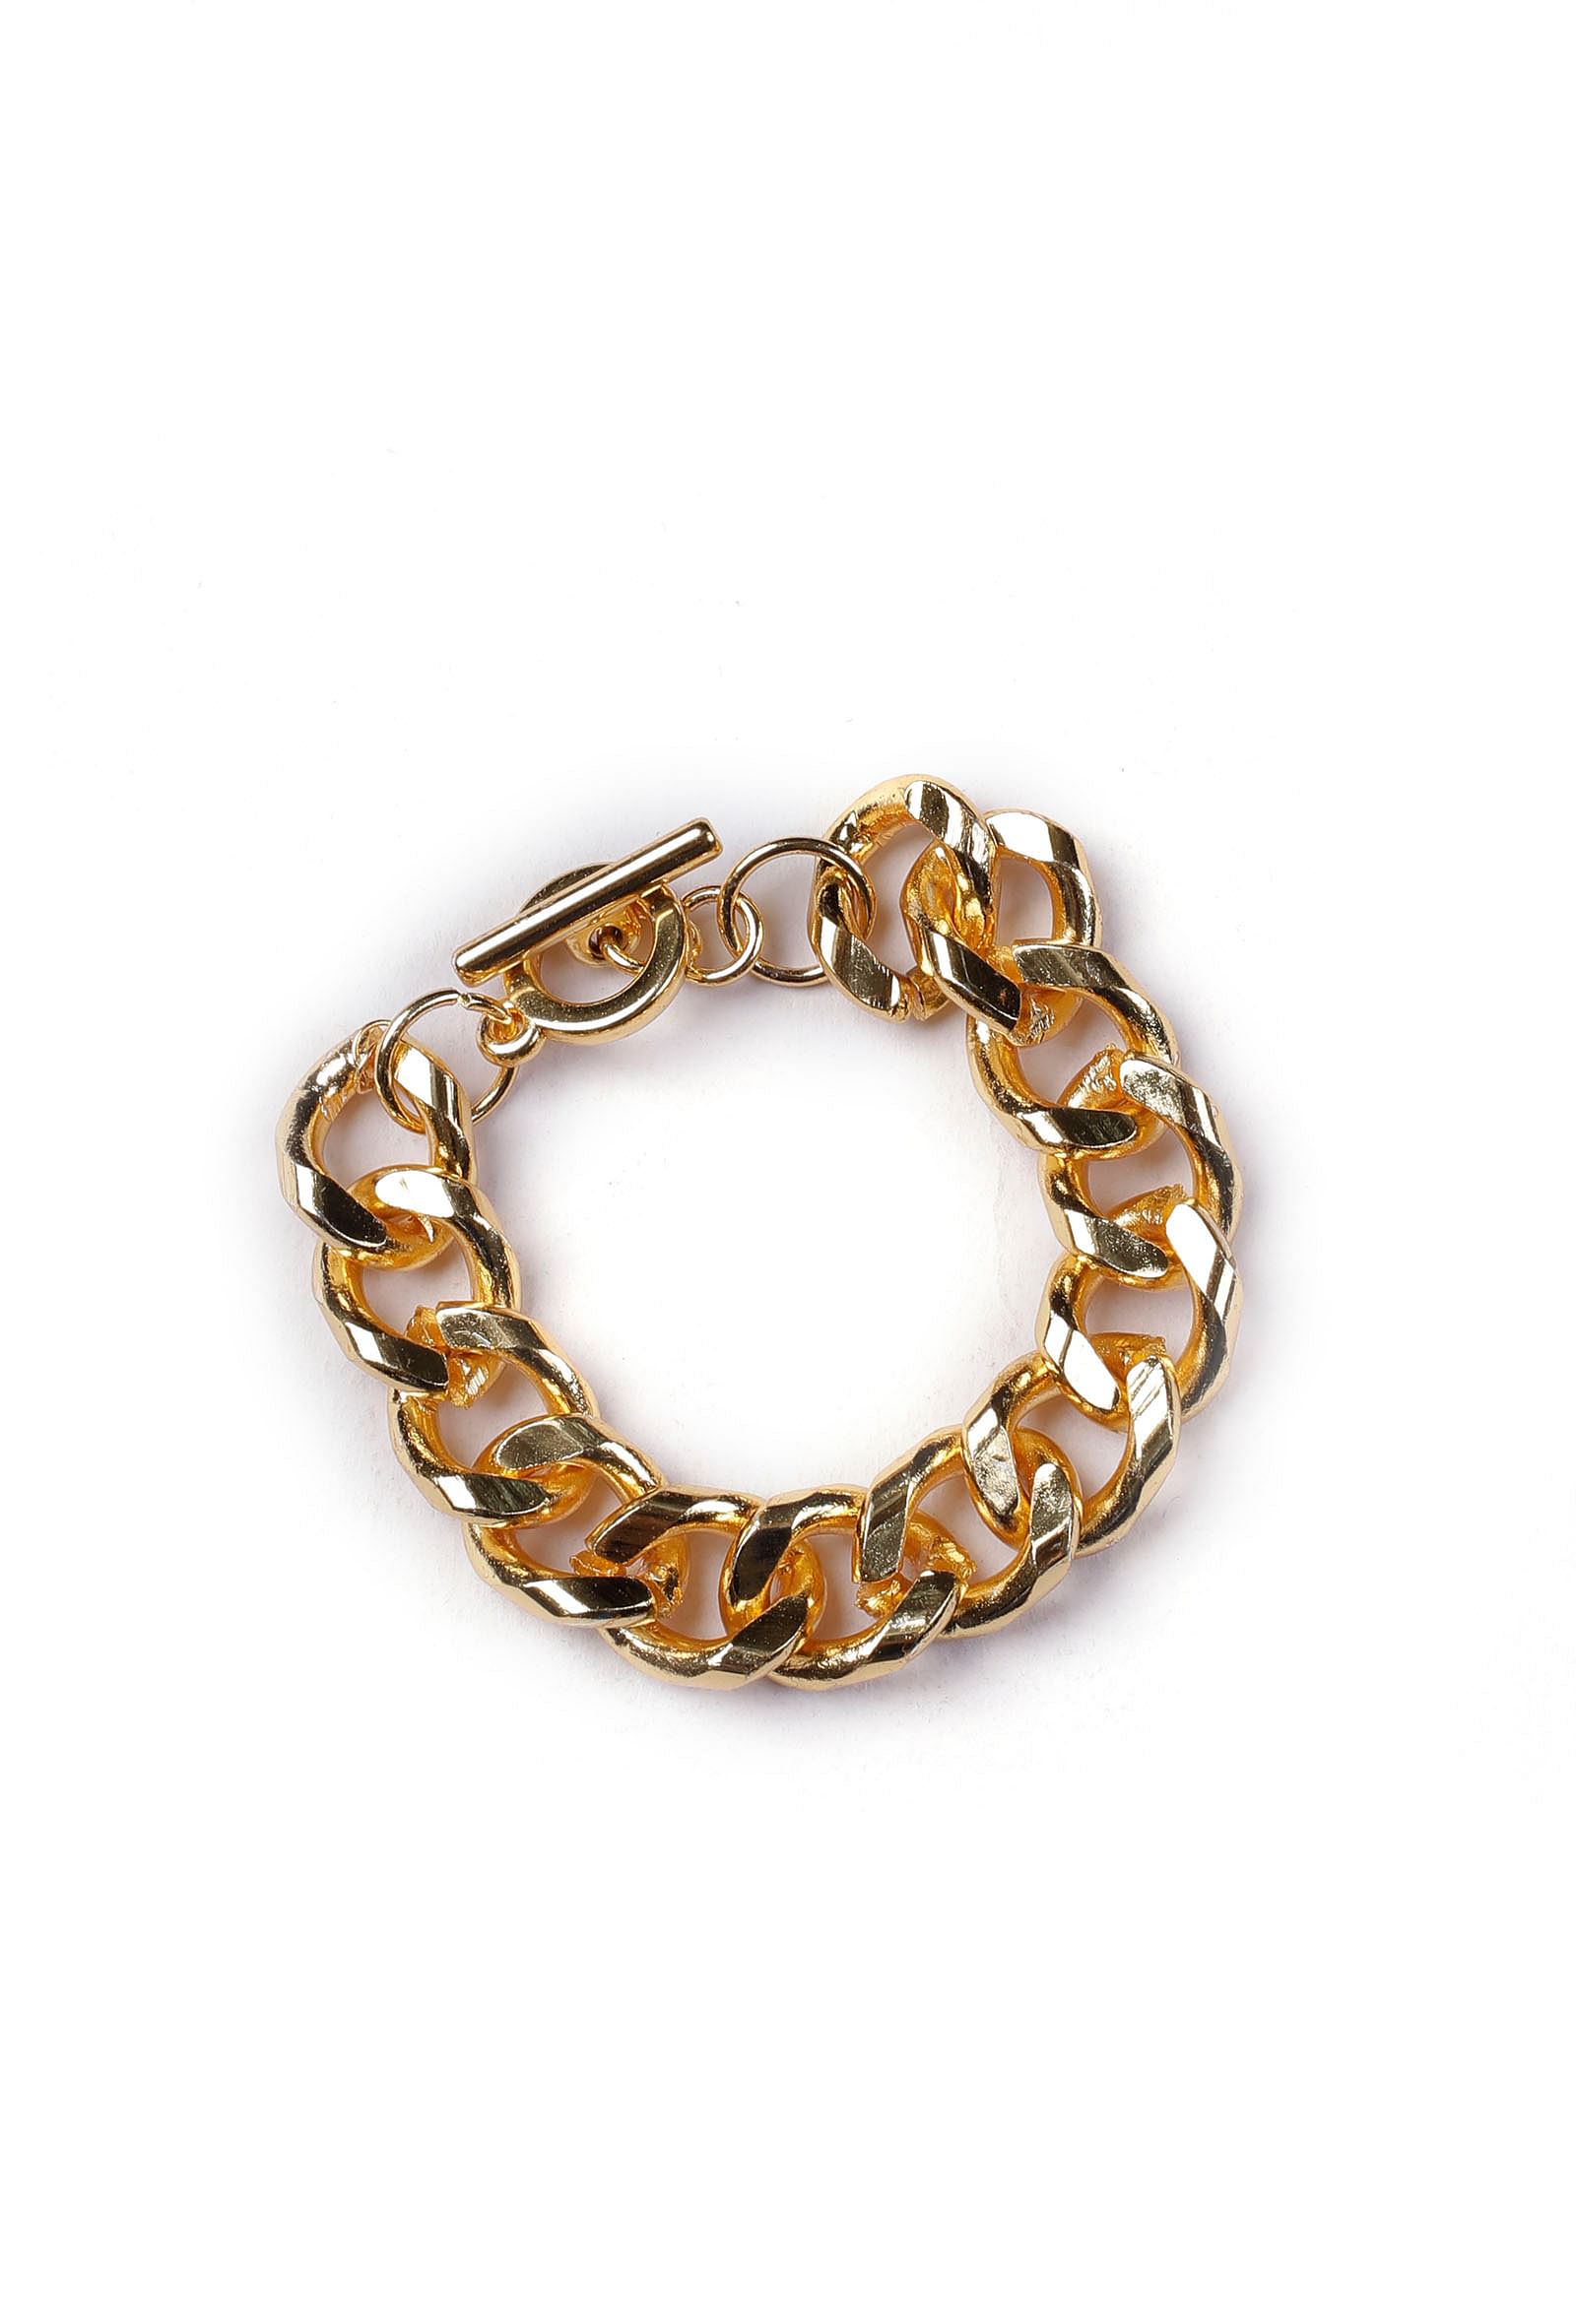 Vintage Copper Chain Link Bracelet Unisex Sausage Puffed Scissor Clasp 9”  A10 | eBay